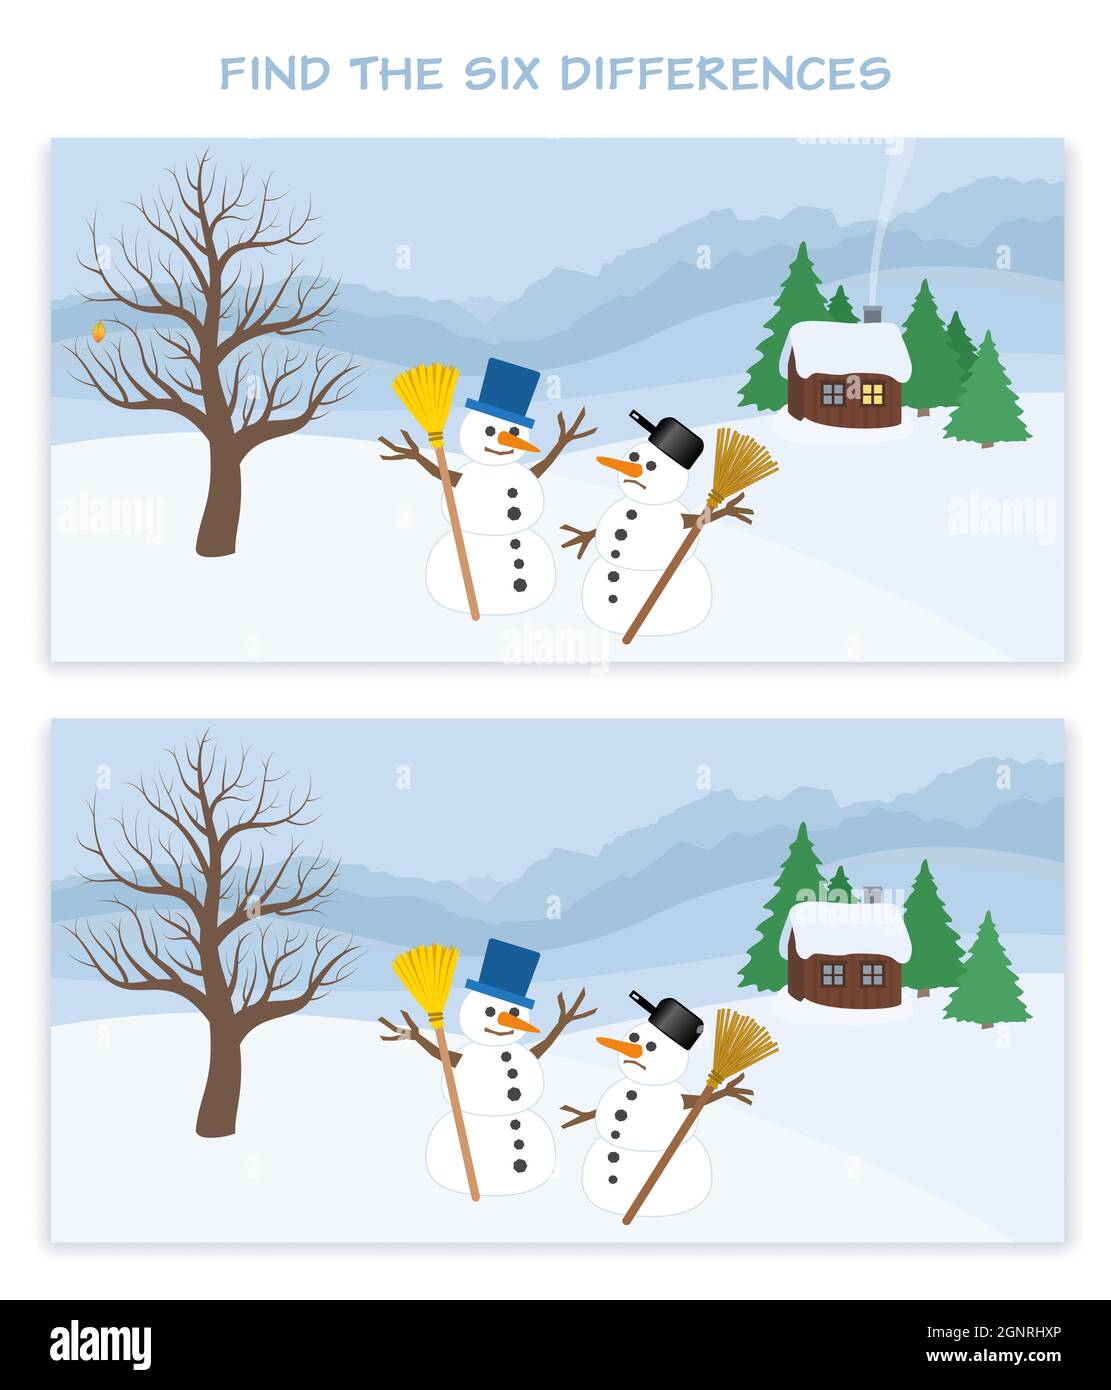 Paysage d'hiver avec six différences. Deux bonhommes de neige, cabane en bois et arbres dans un panorama enneigé de montagne. Puzzle de Noël amusant. Banque D'Images